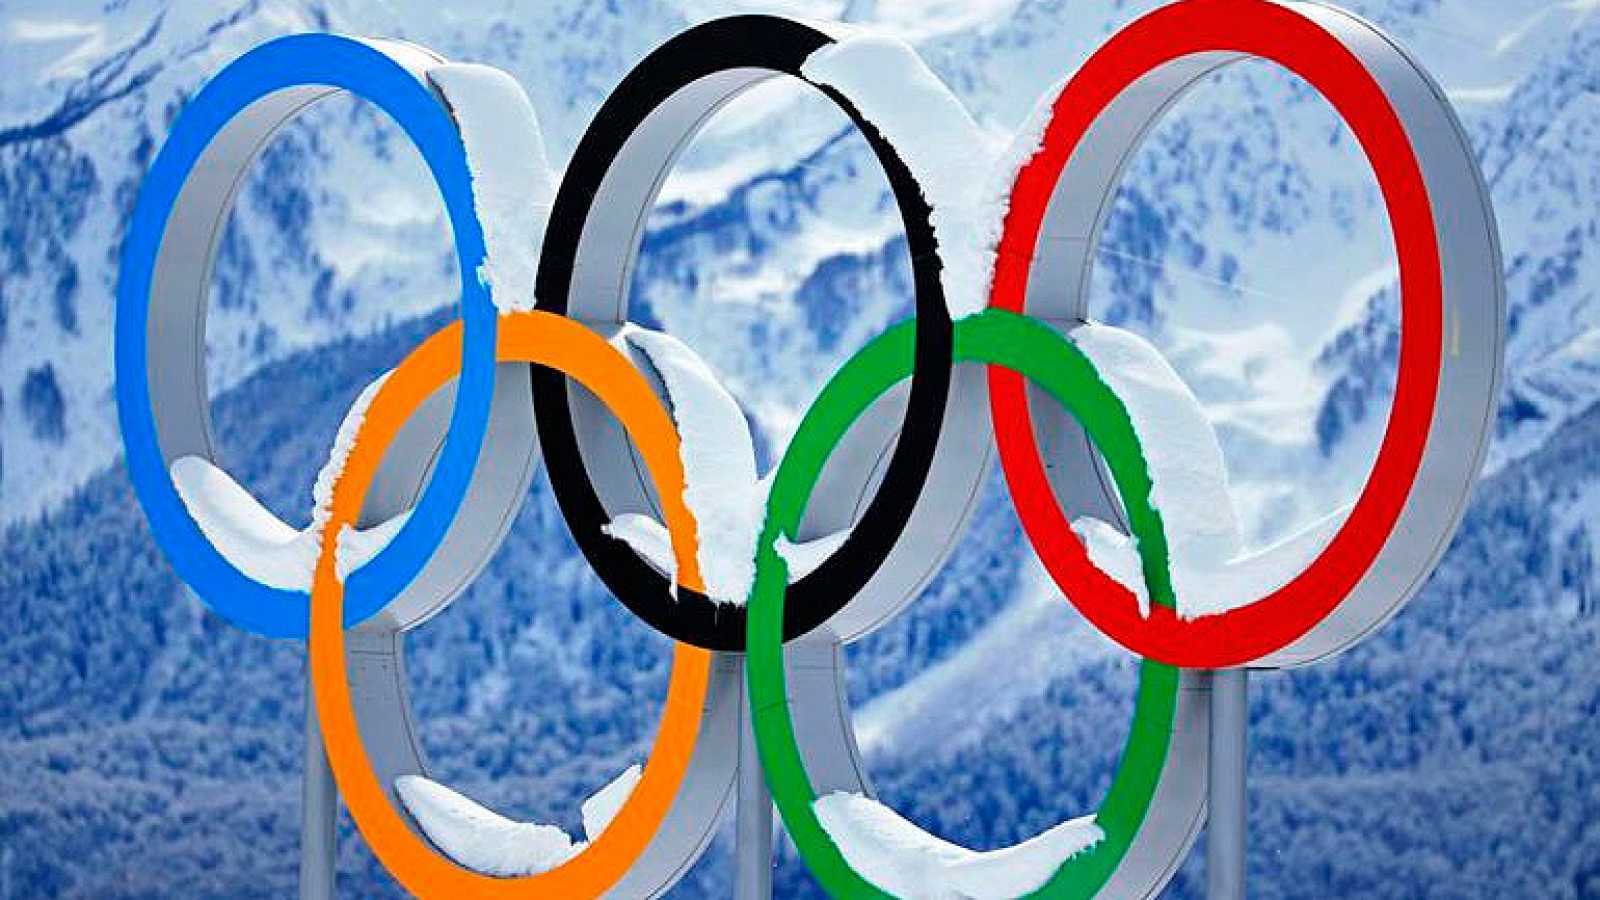 Adiós a la candidatura olímpica de Pirineus-Barcelona 2030 - Noticias - Nevasport.com